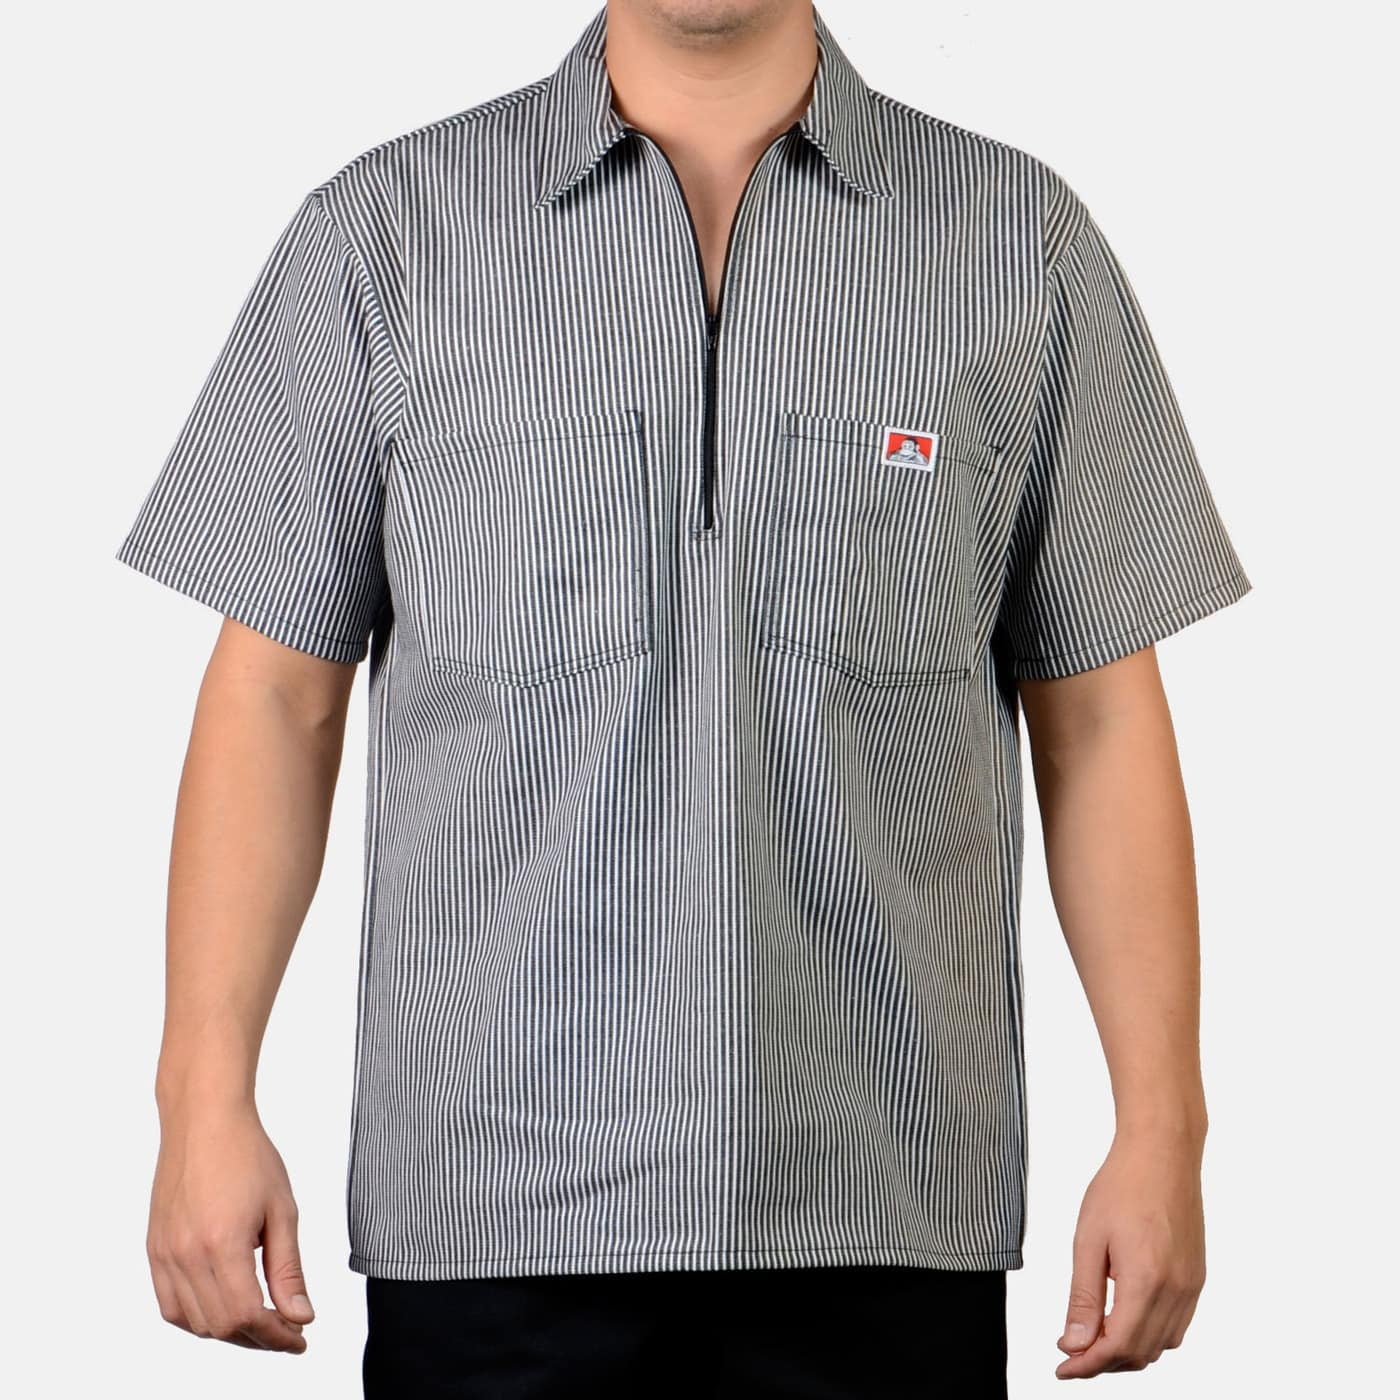 Ben Davis 1/2 Zip Striped Short Sleeve Work Shirt - Walmart.com